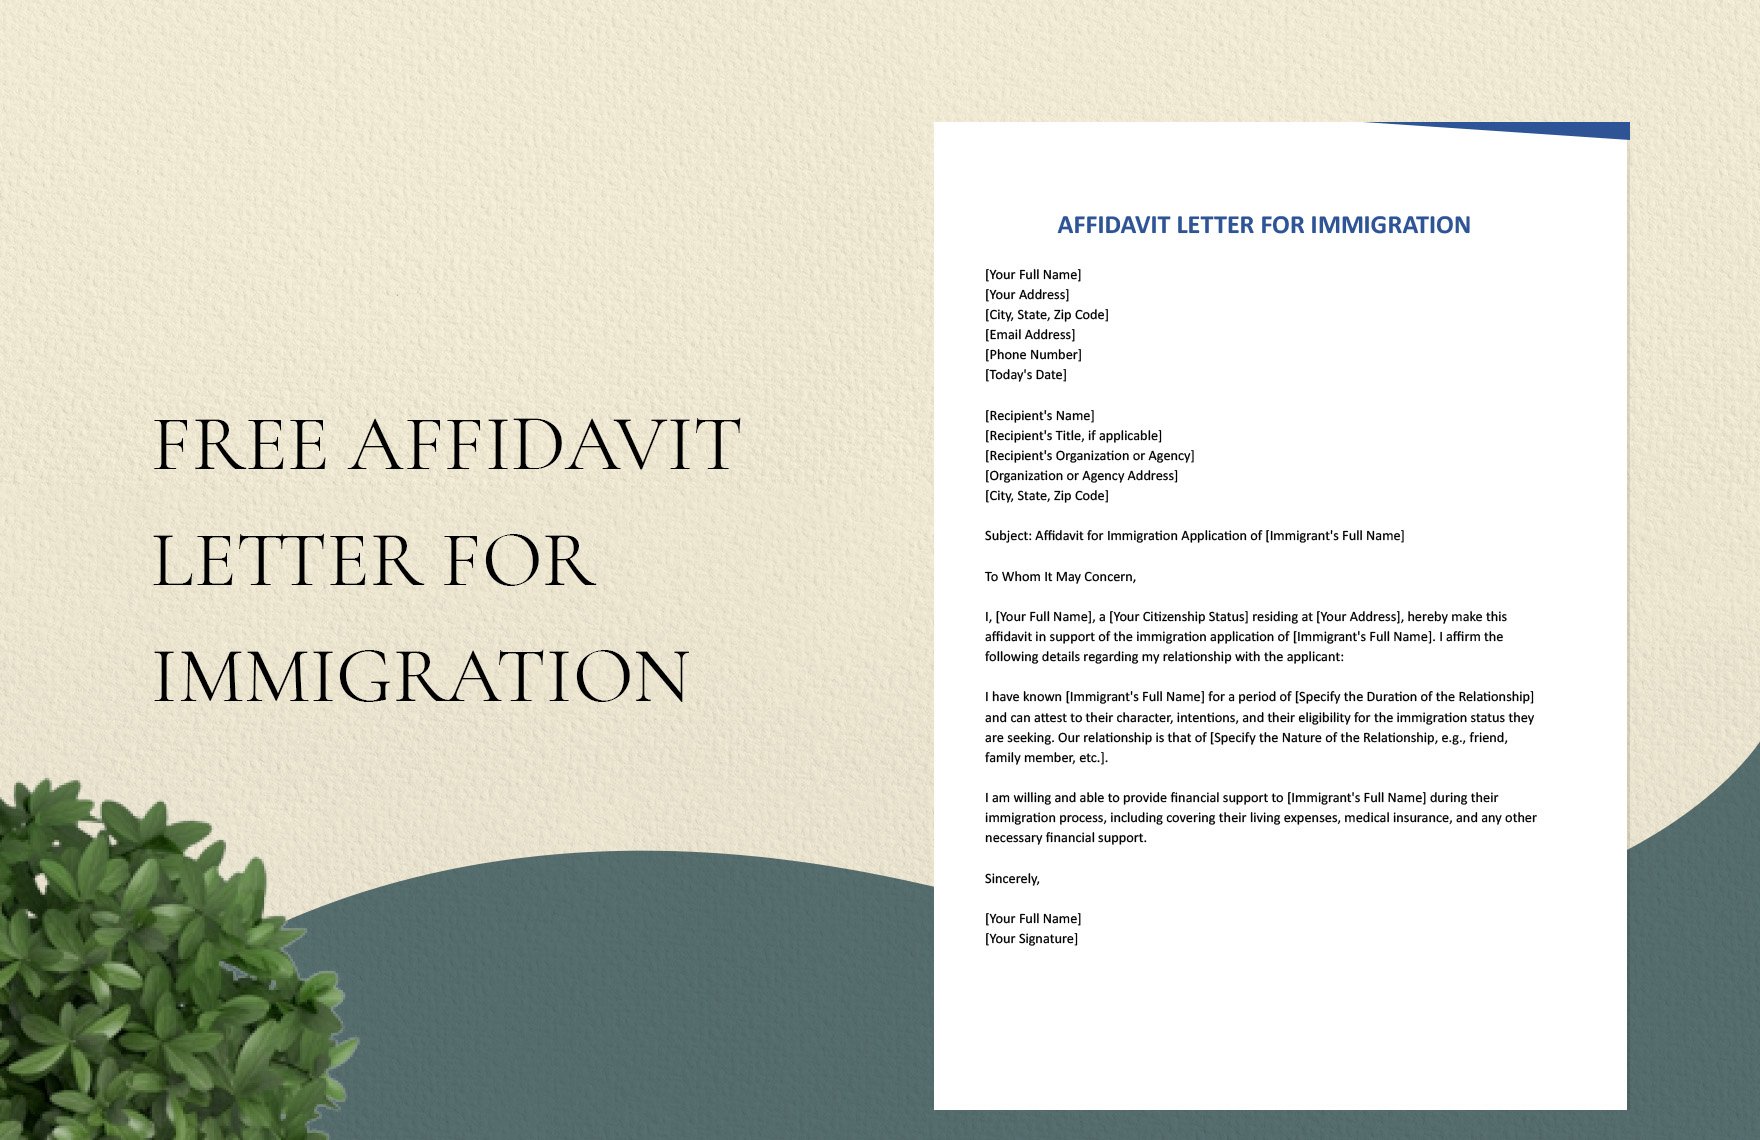 Affidavit Letter For Immigration in Word, Google Docs